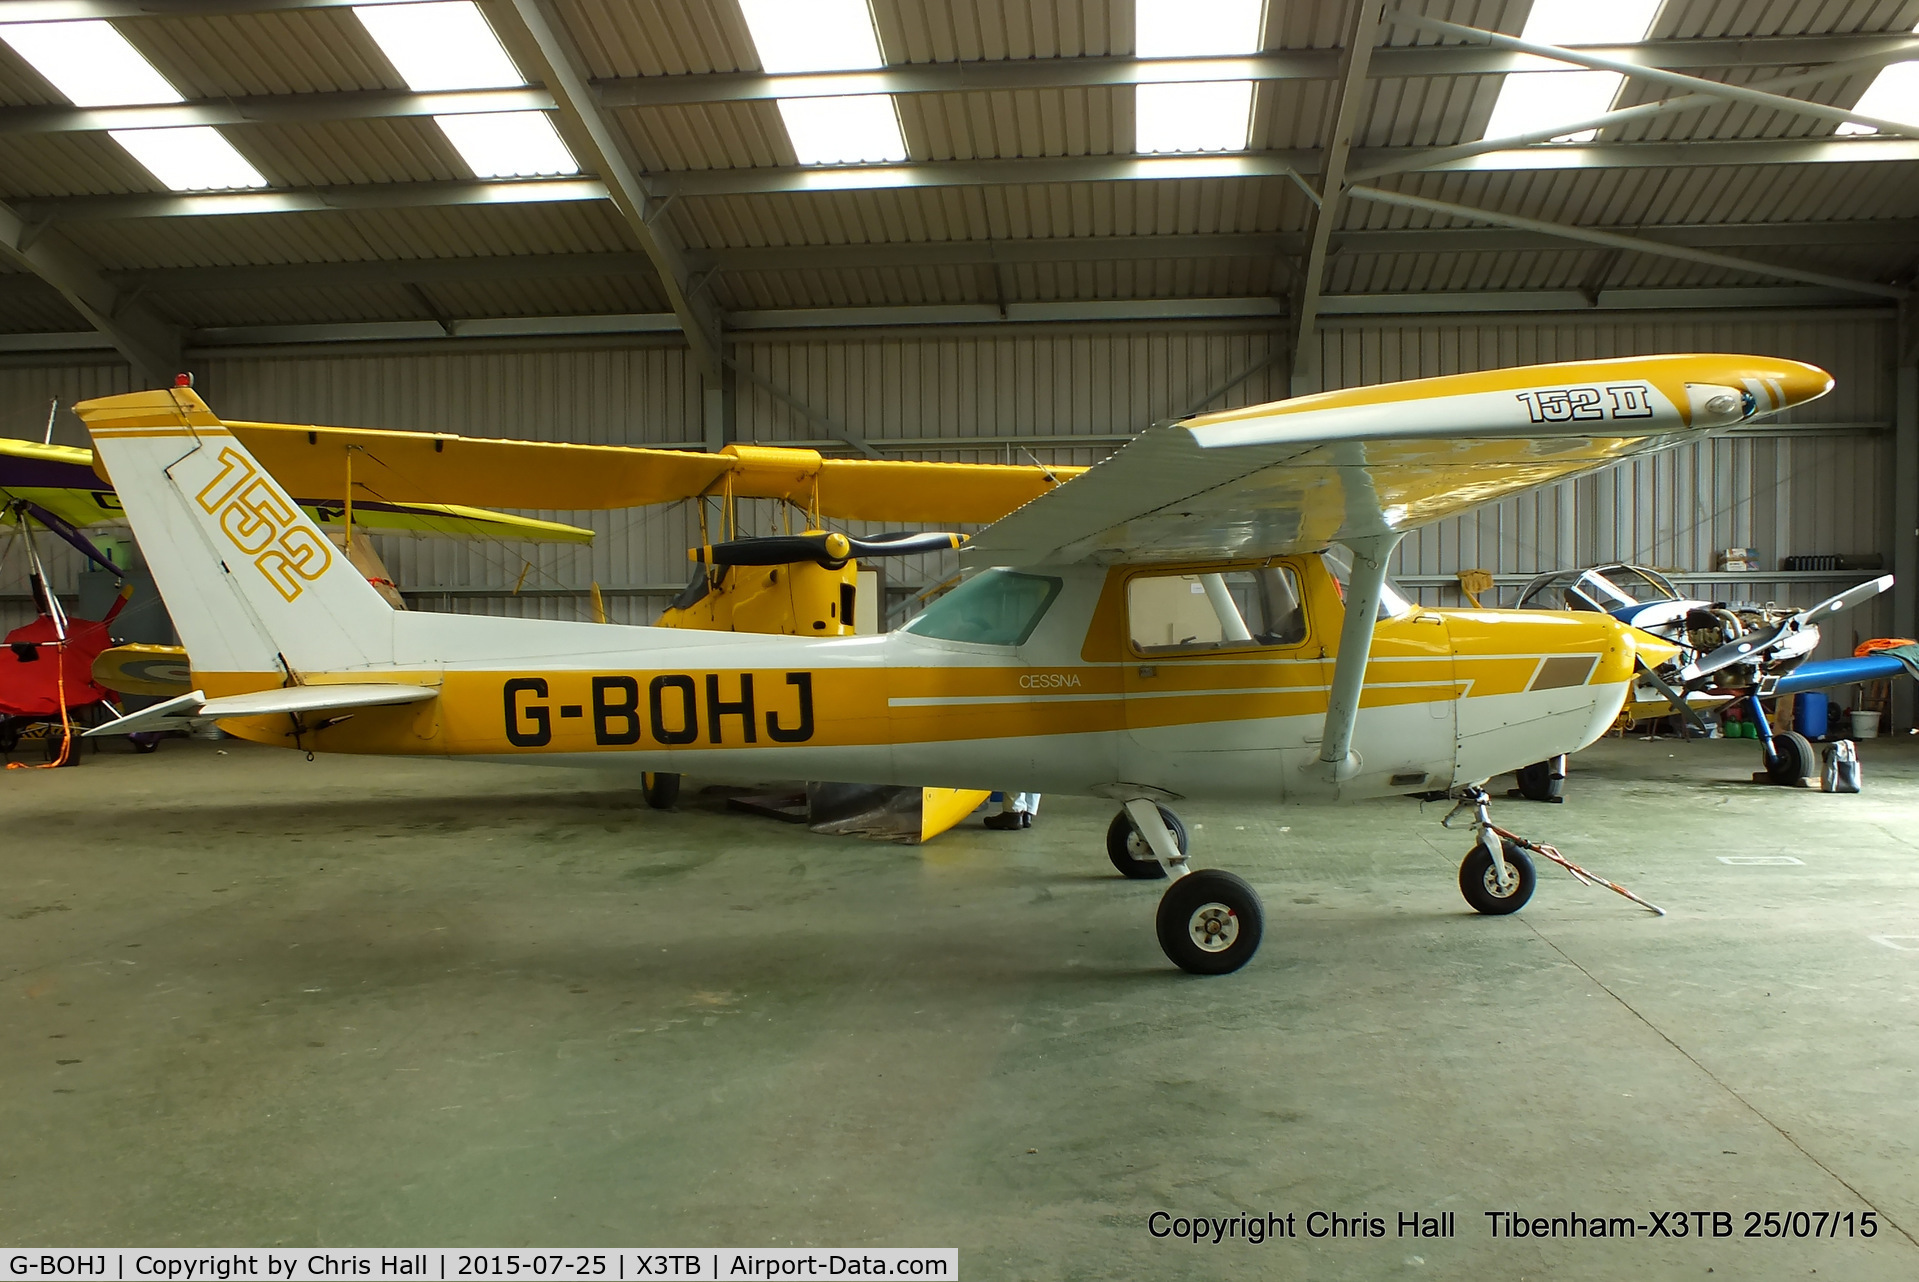 G-BOHJ, 1977 Cessna 152 C/N 152-80558, at Tibenham airfield